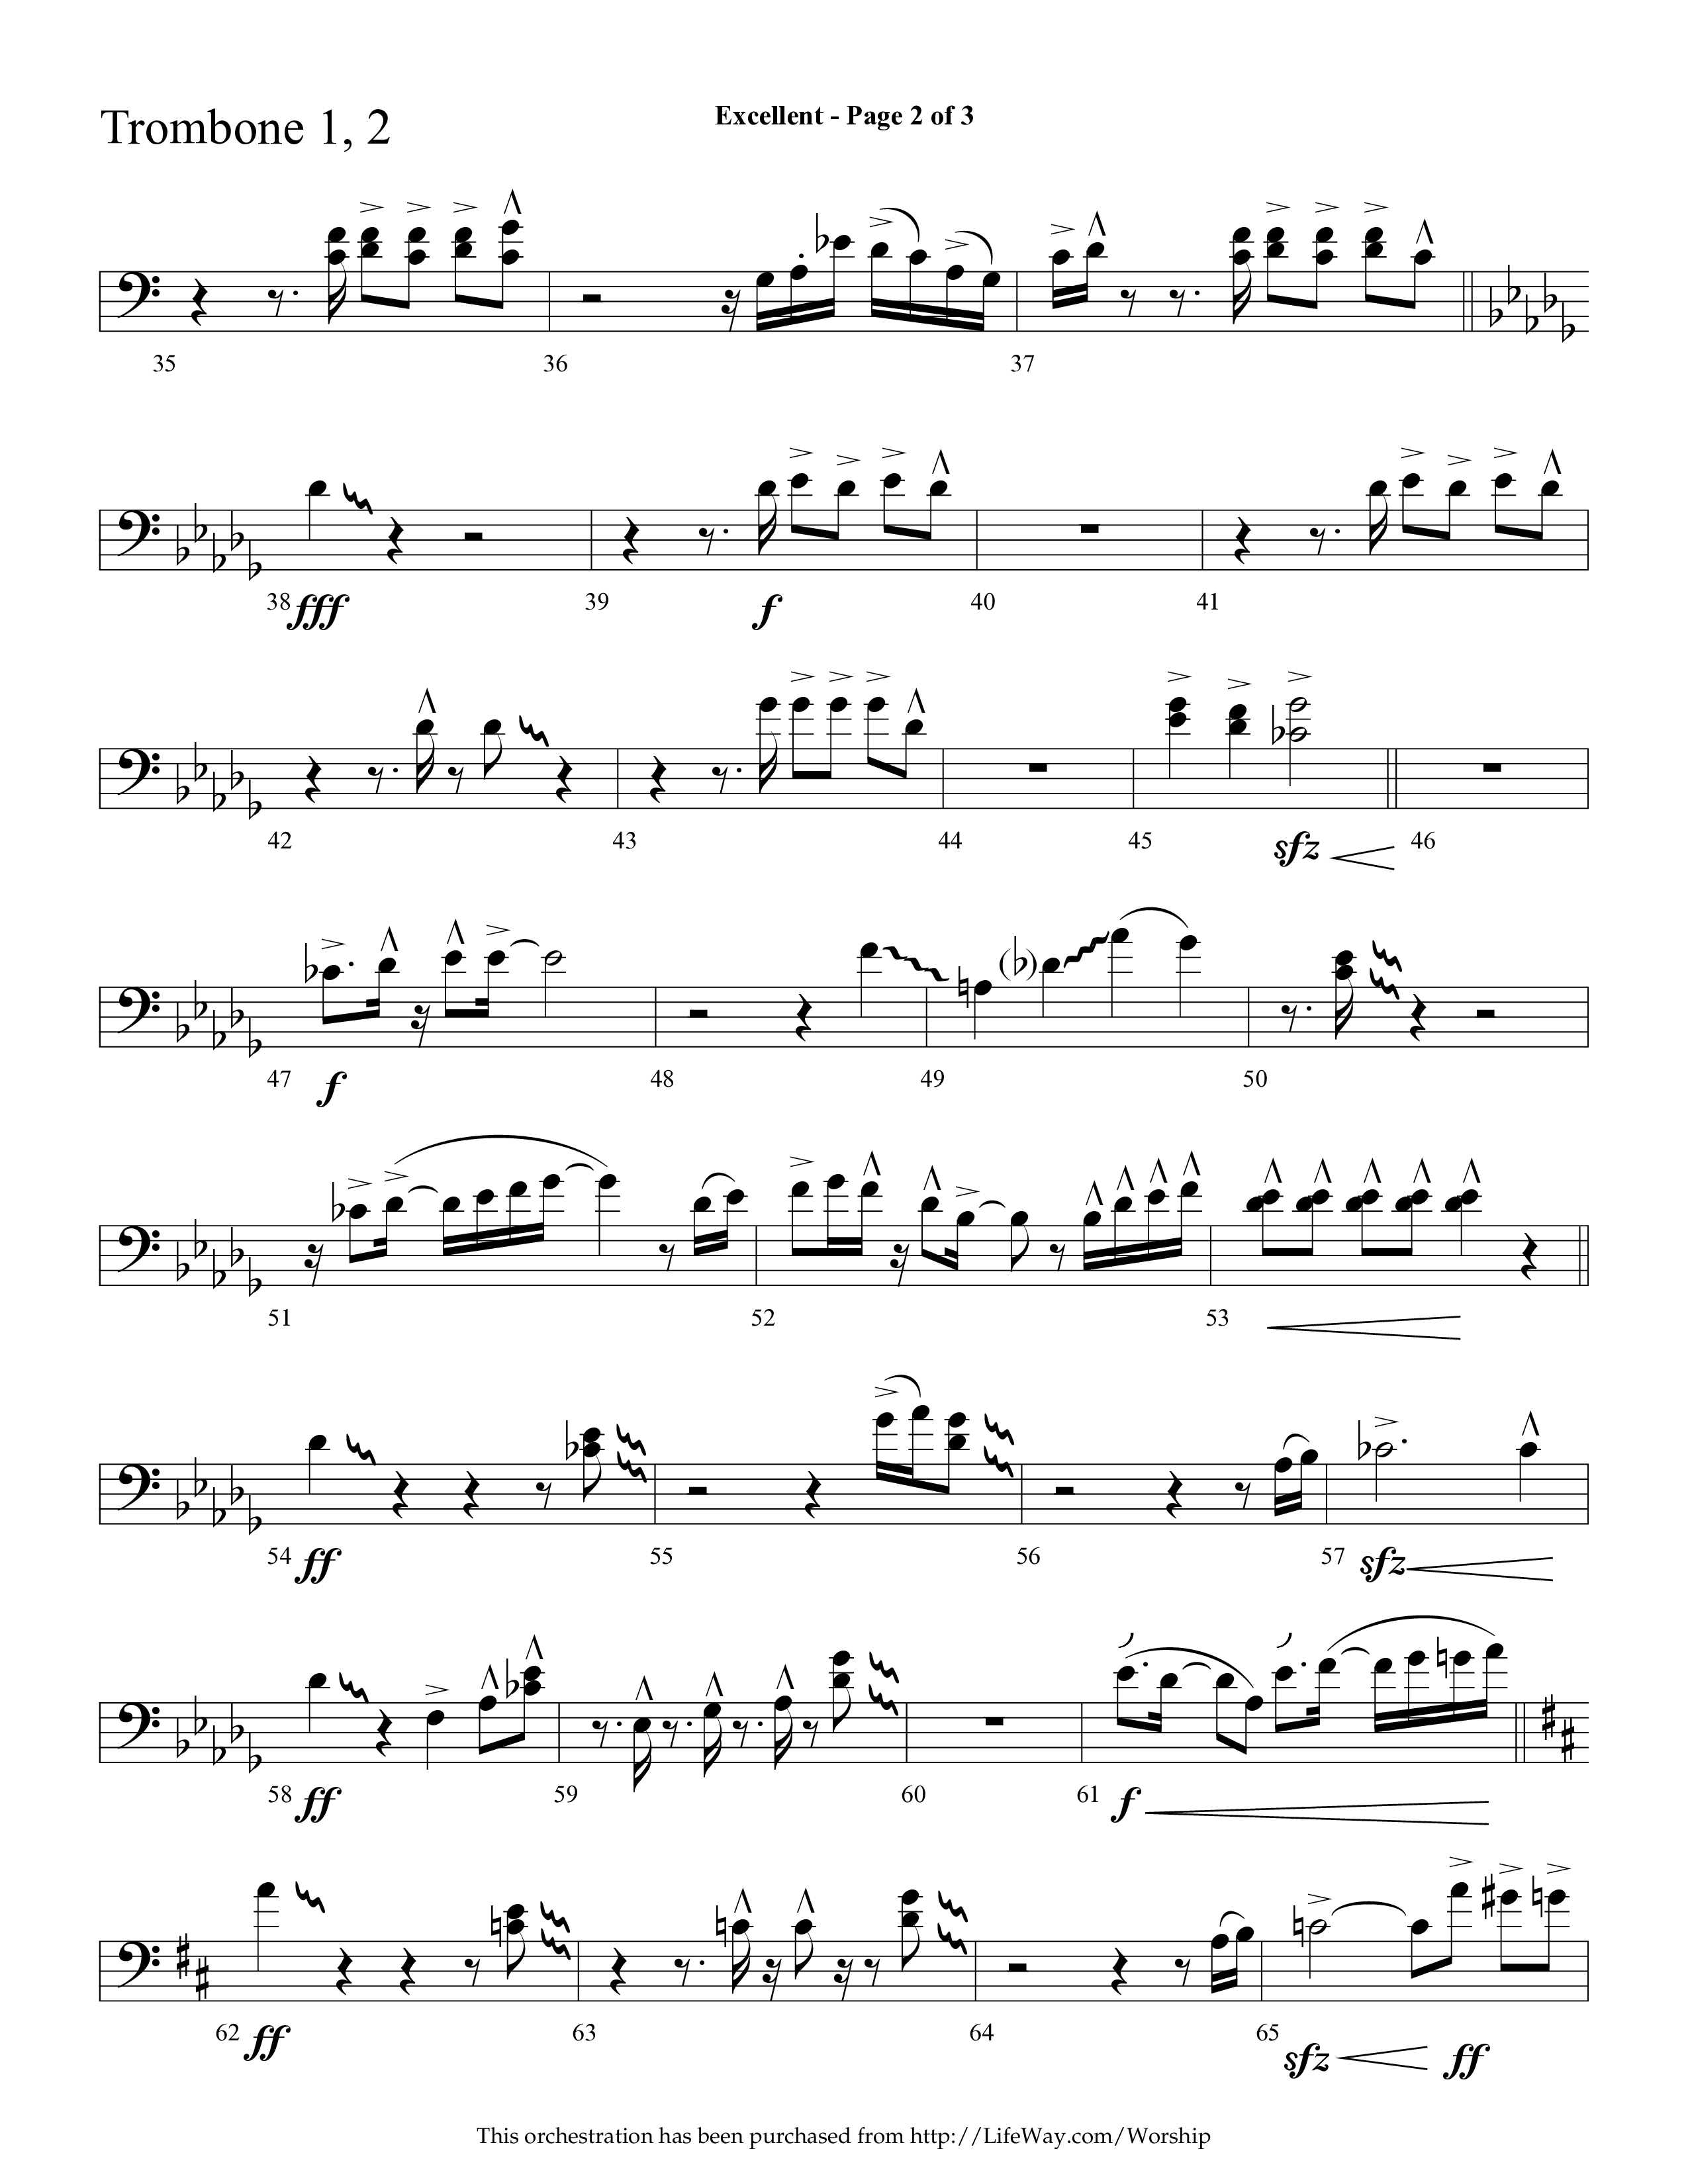 Excellent (Choral Anthem SATB) Trombone 1/2 (Lifeway Choral / Arr. Cliff Duren)